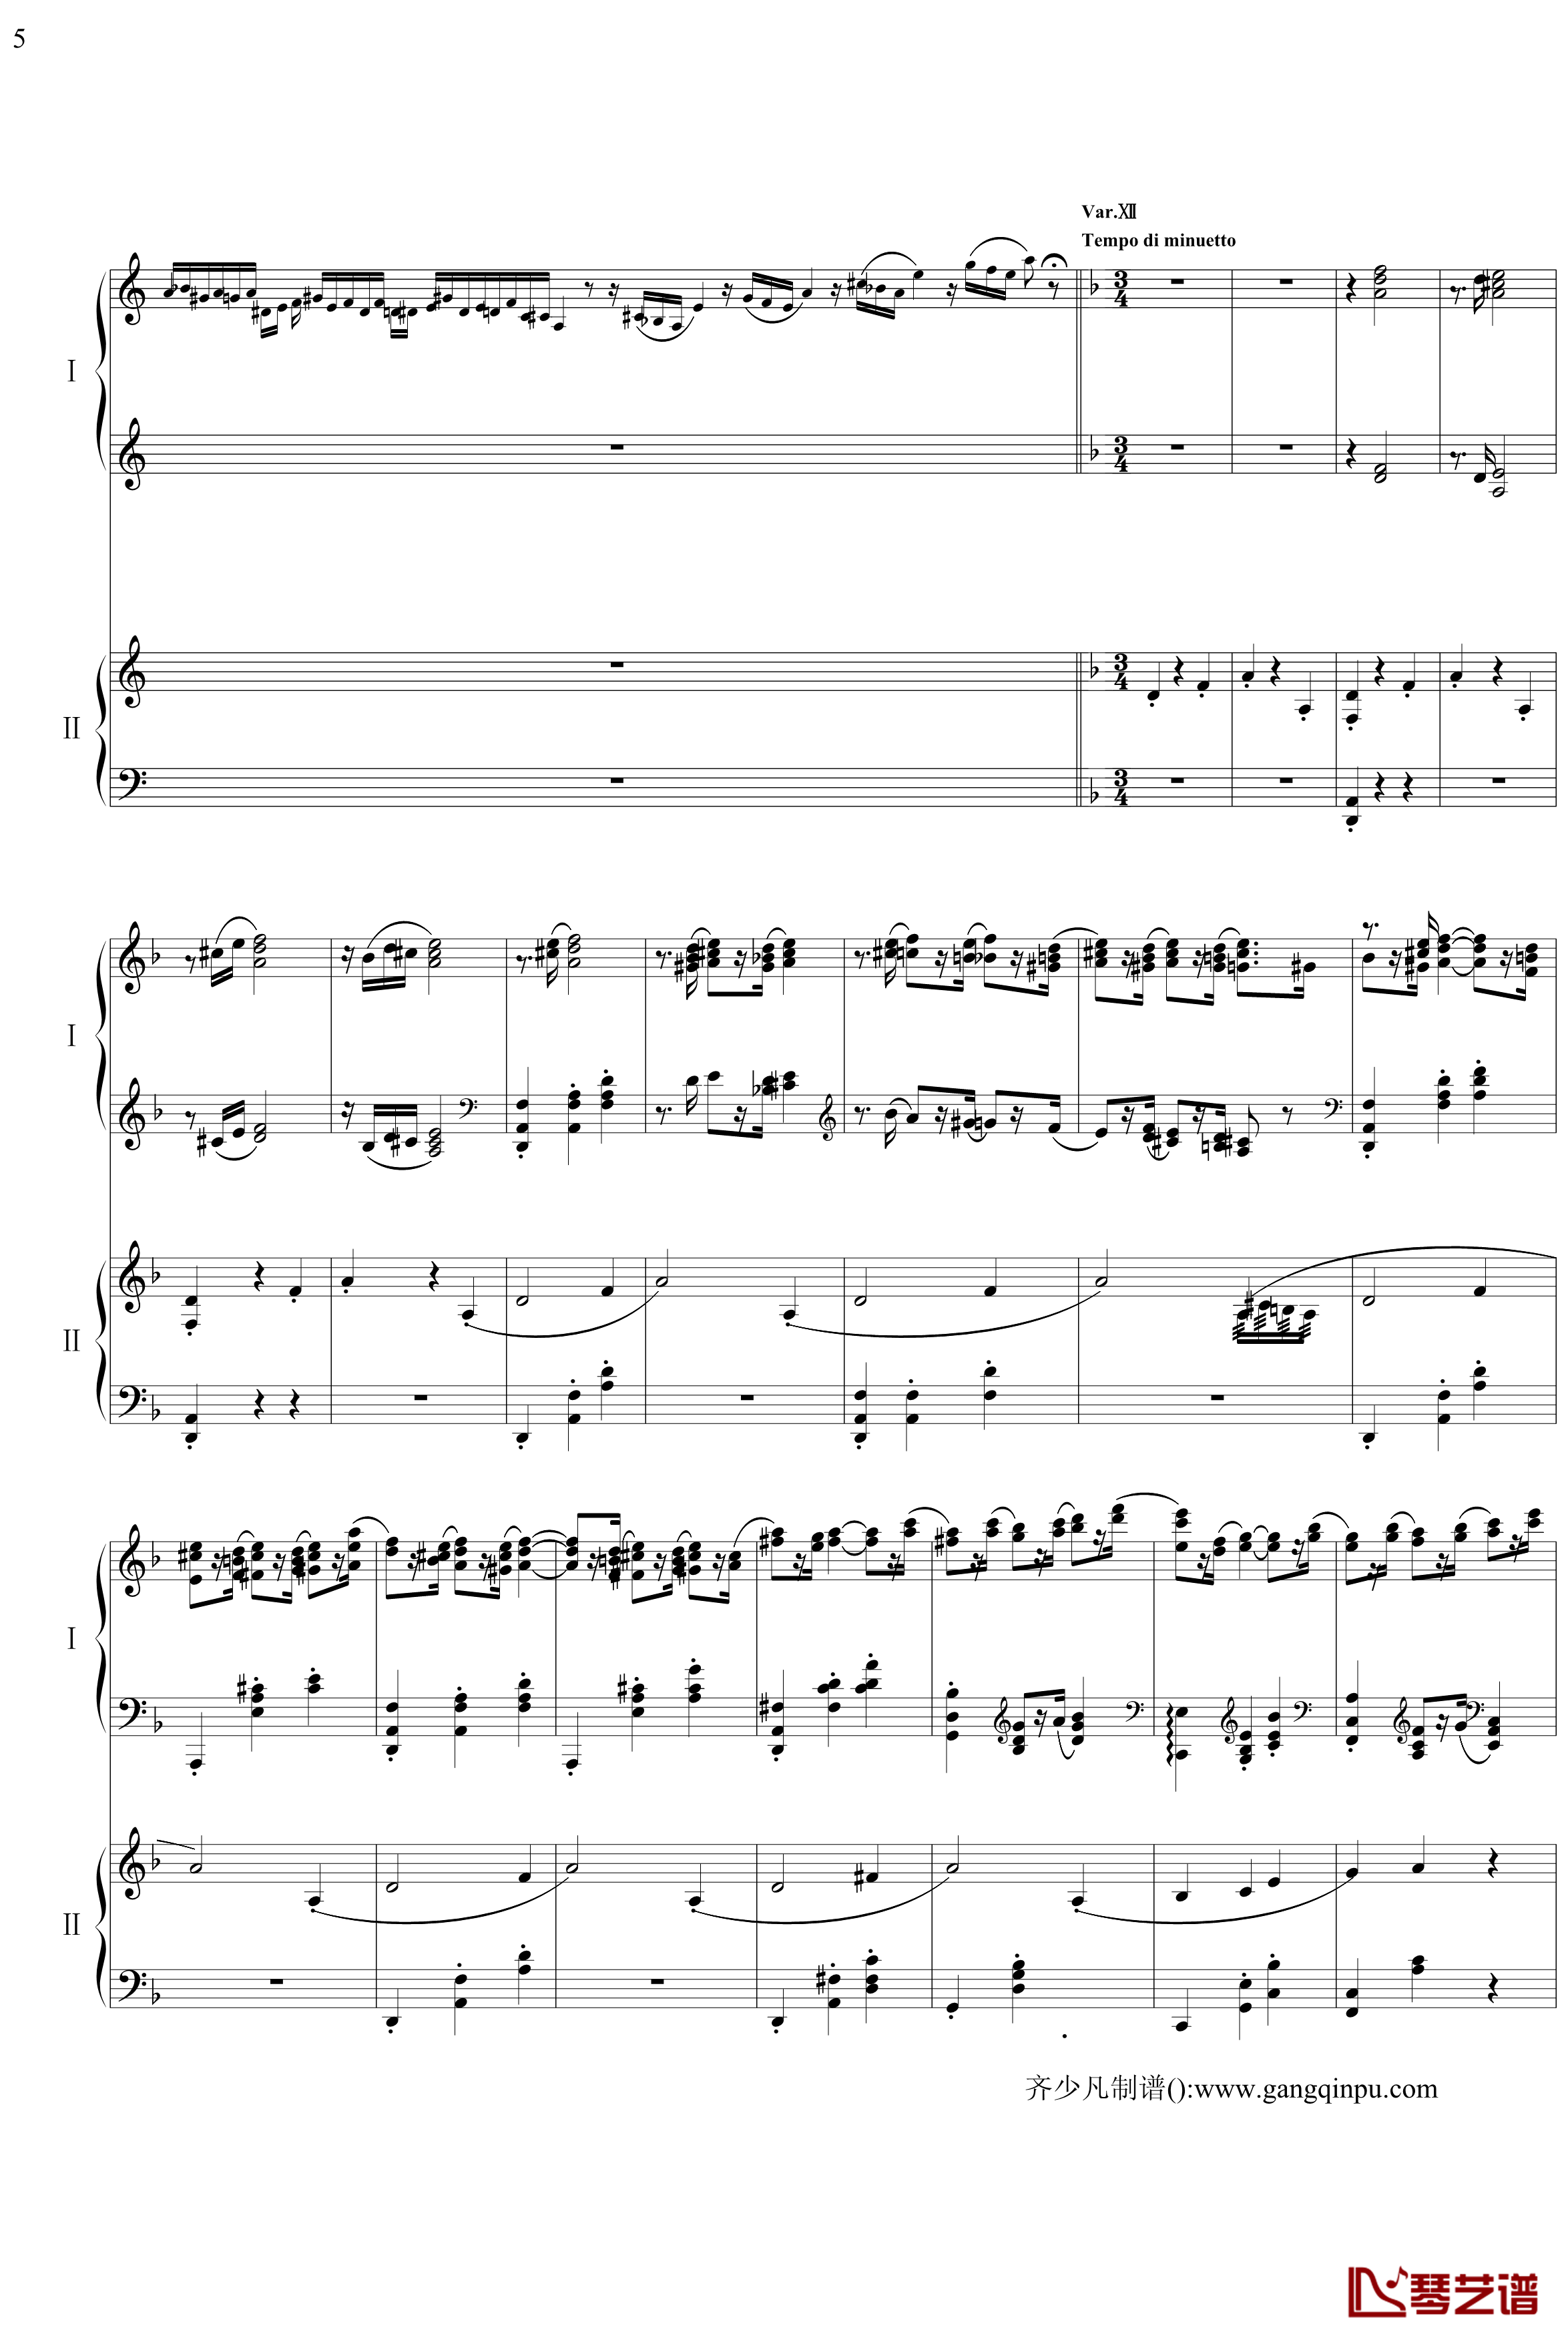 帕格尼尼主题狂想曲钢琴谱-11~18变奏-拉赫马尼若夫5